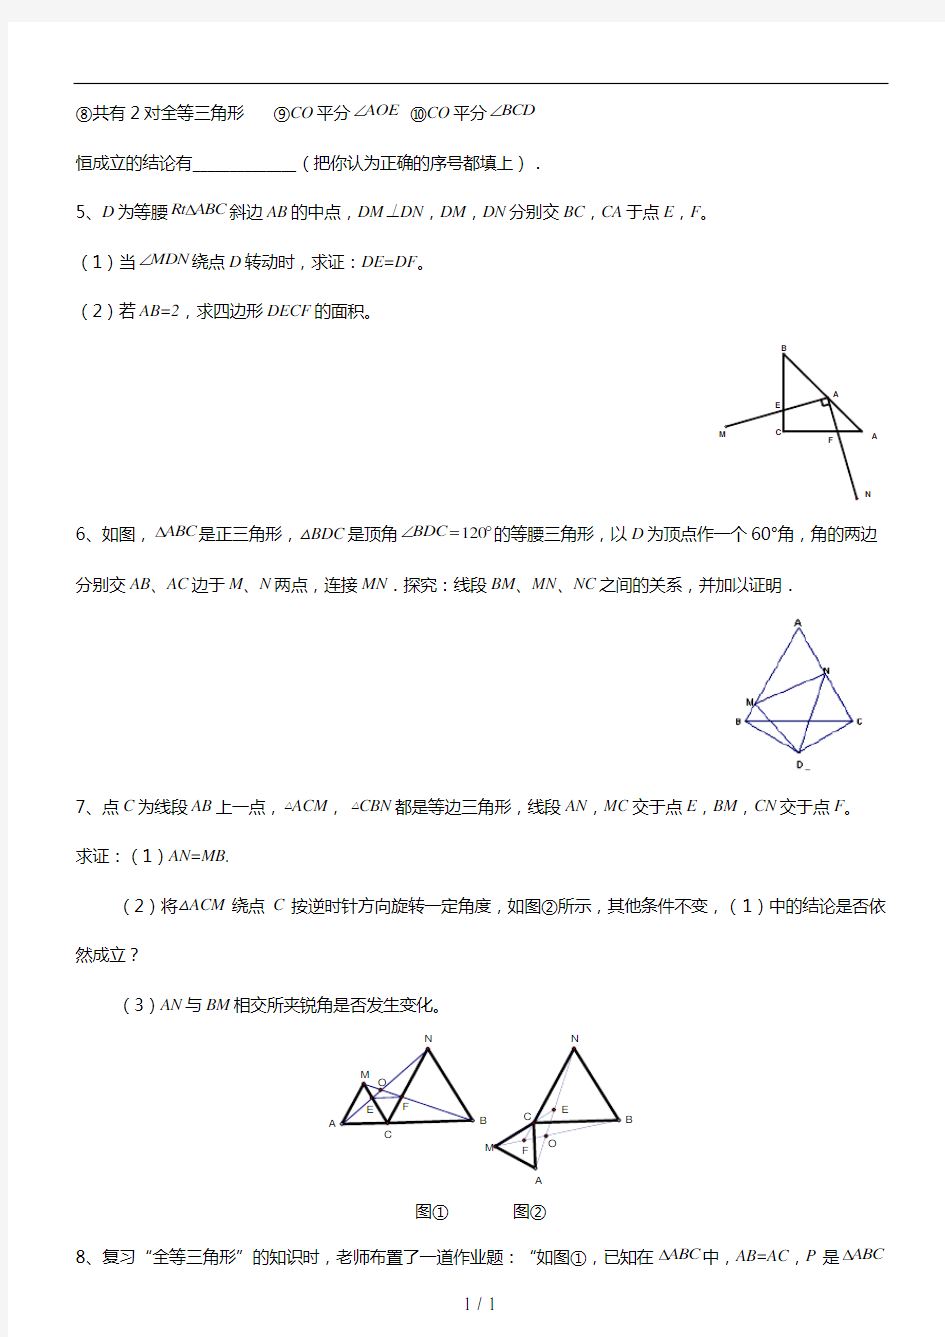 全等三角形难题集锦(整理)